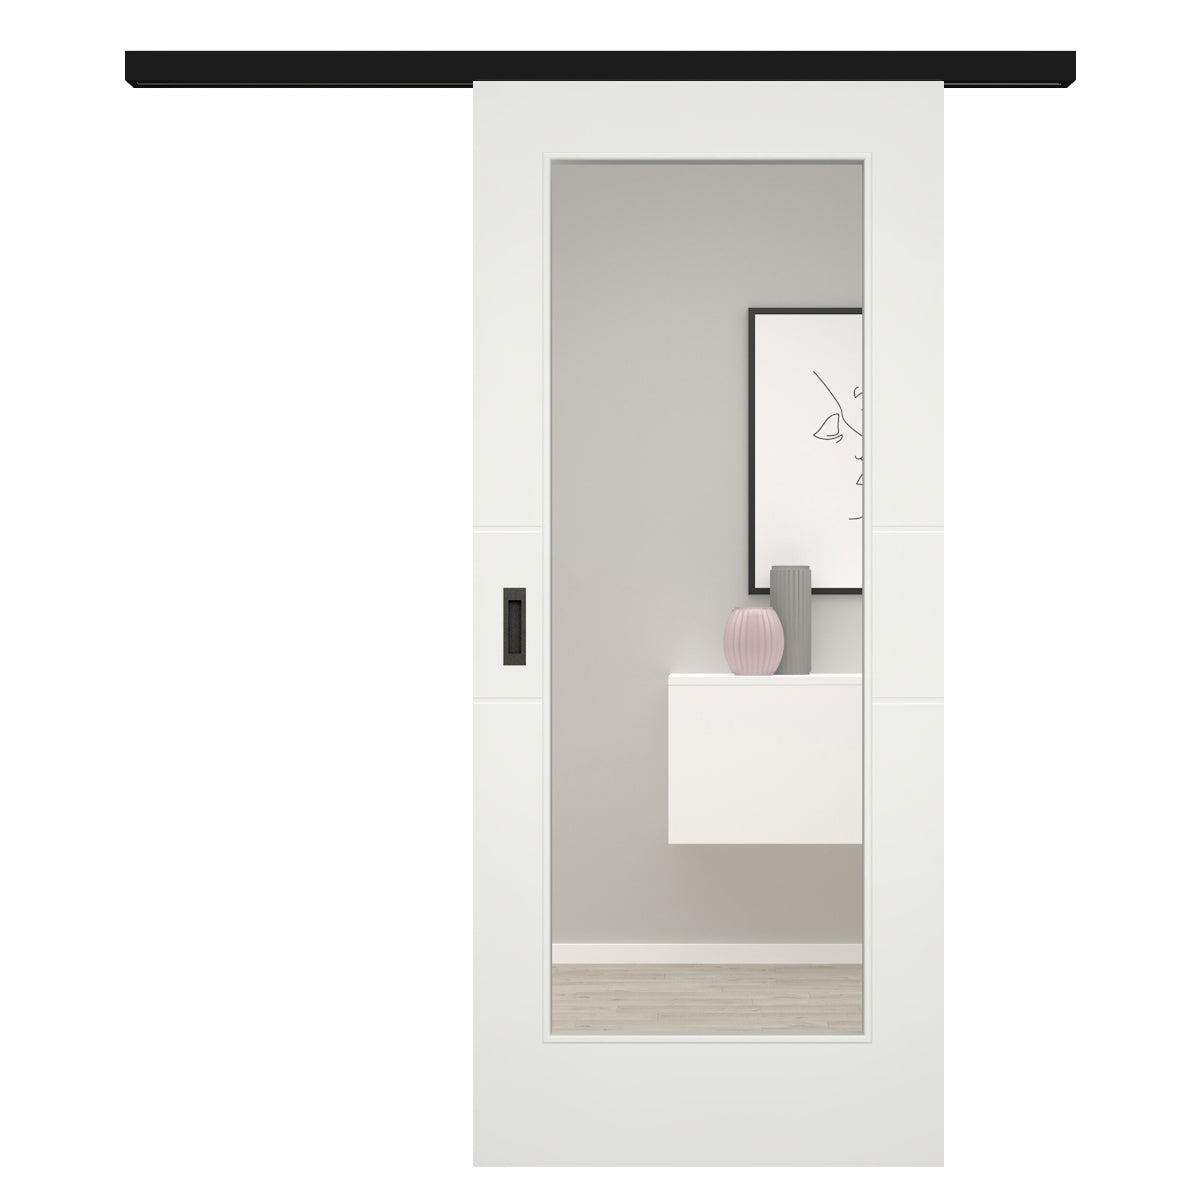 Schiebetür für Set mit schwarzem Laufkasten mit Lichtausschnitt soft-weiß 2 Rillen - Modell Designtür Q21LA